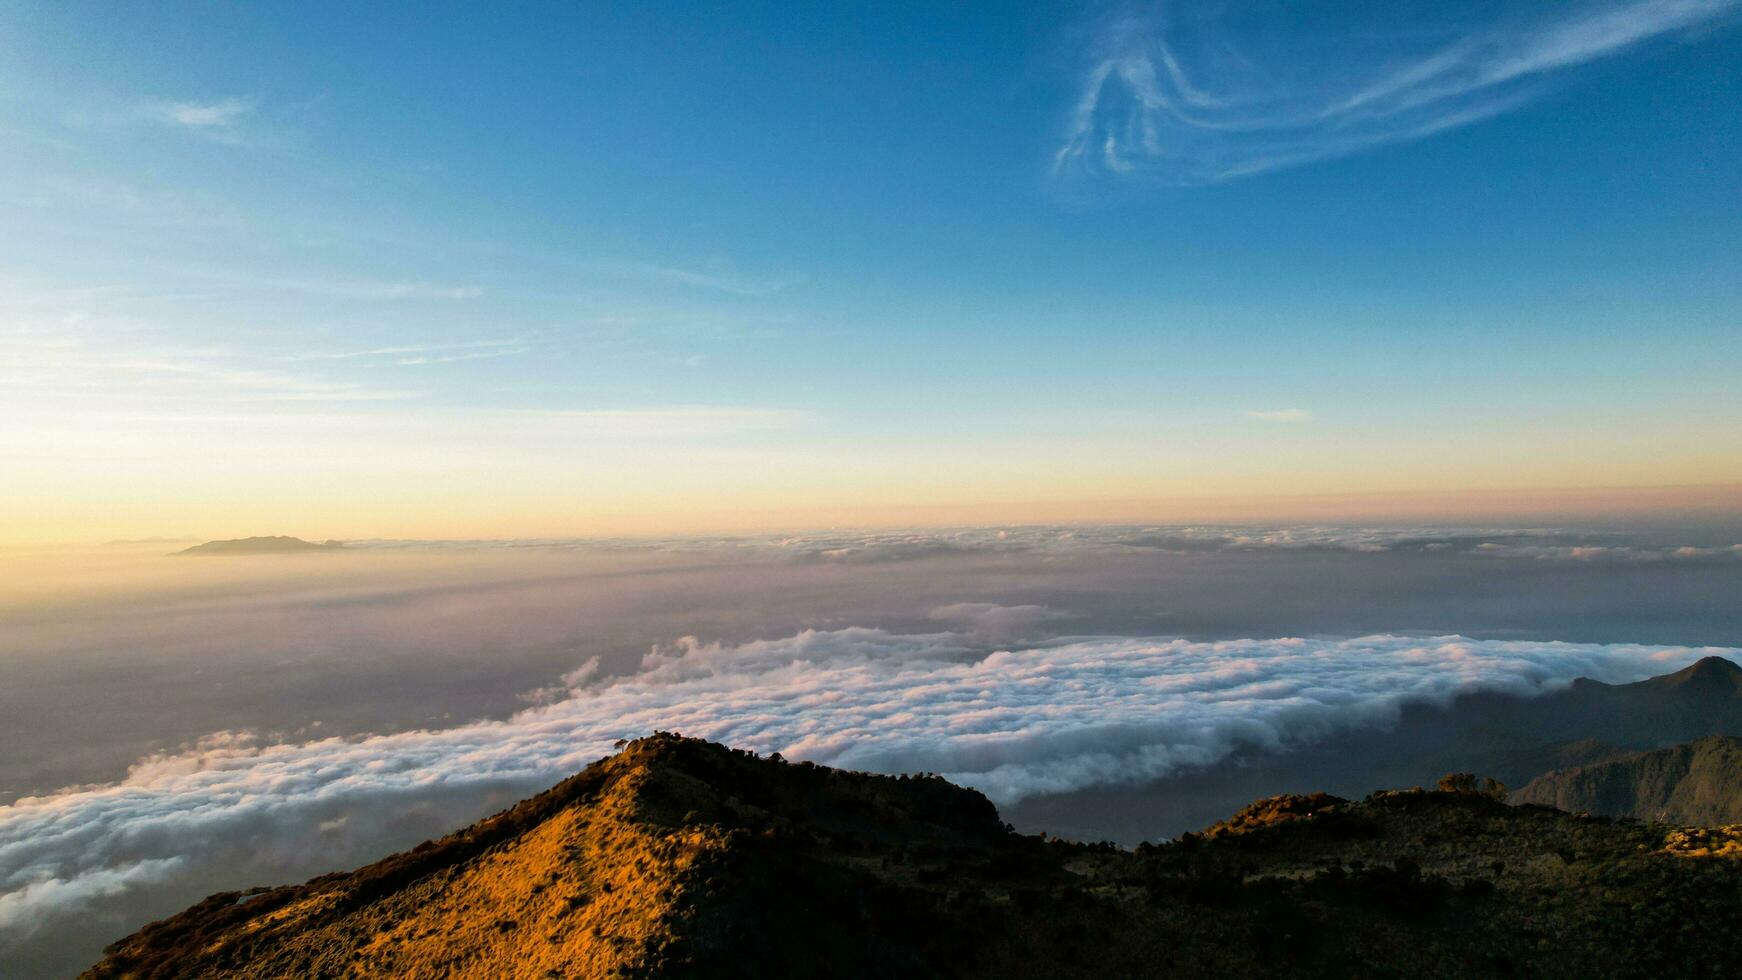 das schön Landschaft Aussicht von Lawu Berg beim Sonnenaufgang gelegen im magetan. einer von das die meisten schön Berge im Java mit ein Höhe von 3265m über Meer eben. Magetan, Indonesien August 1, 2023 foto